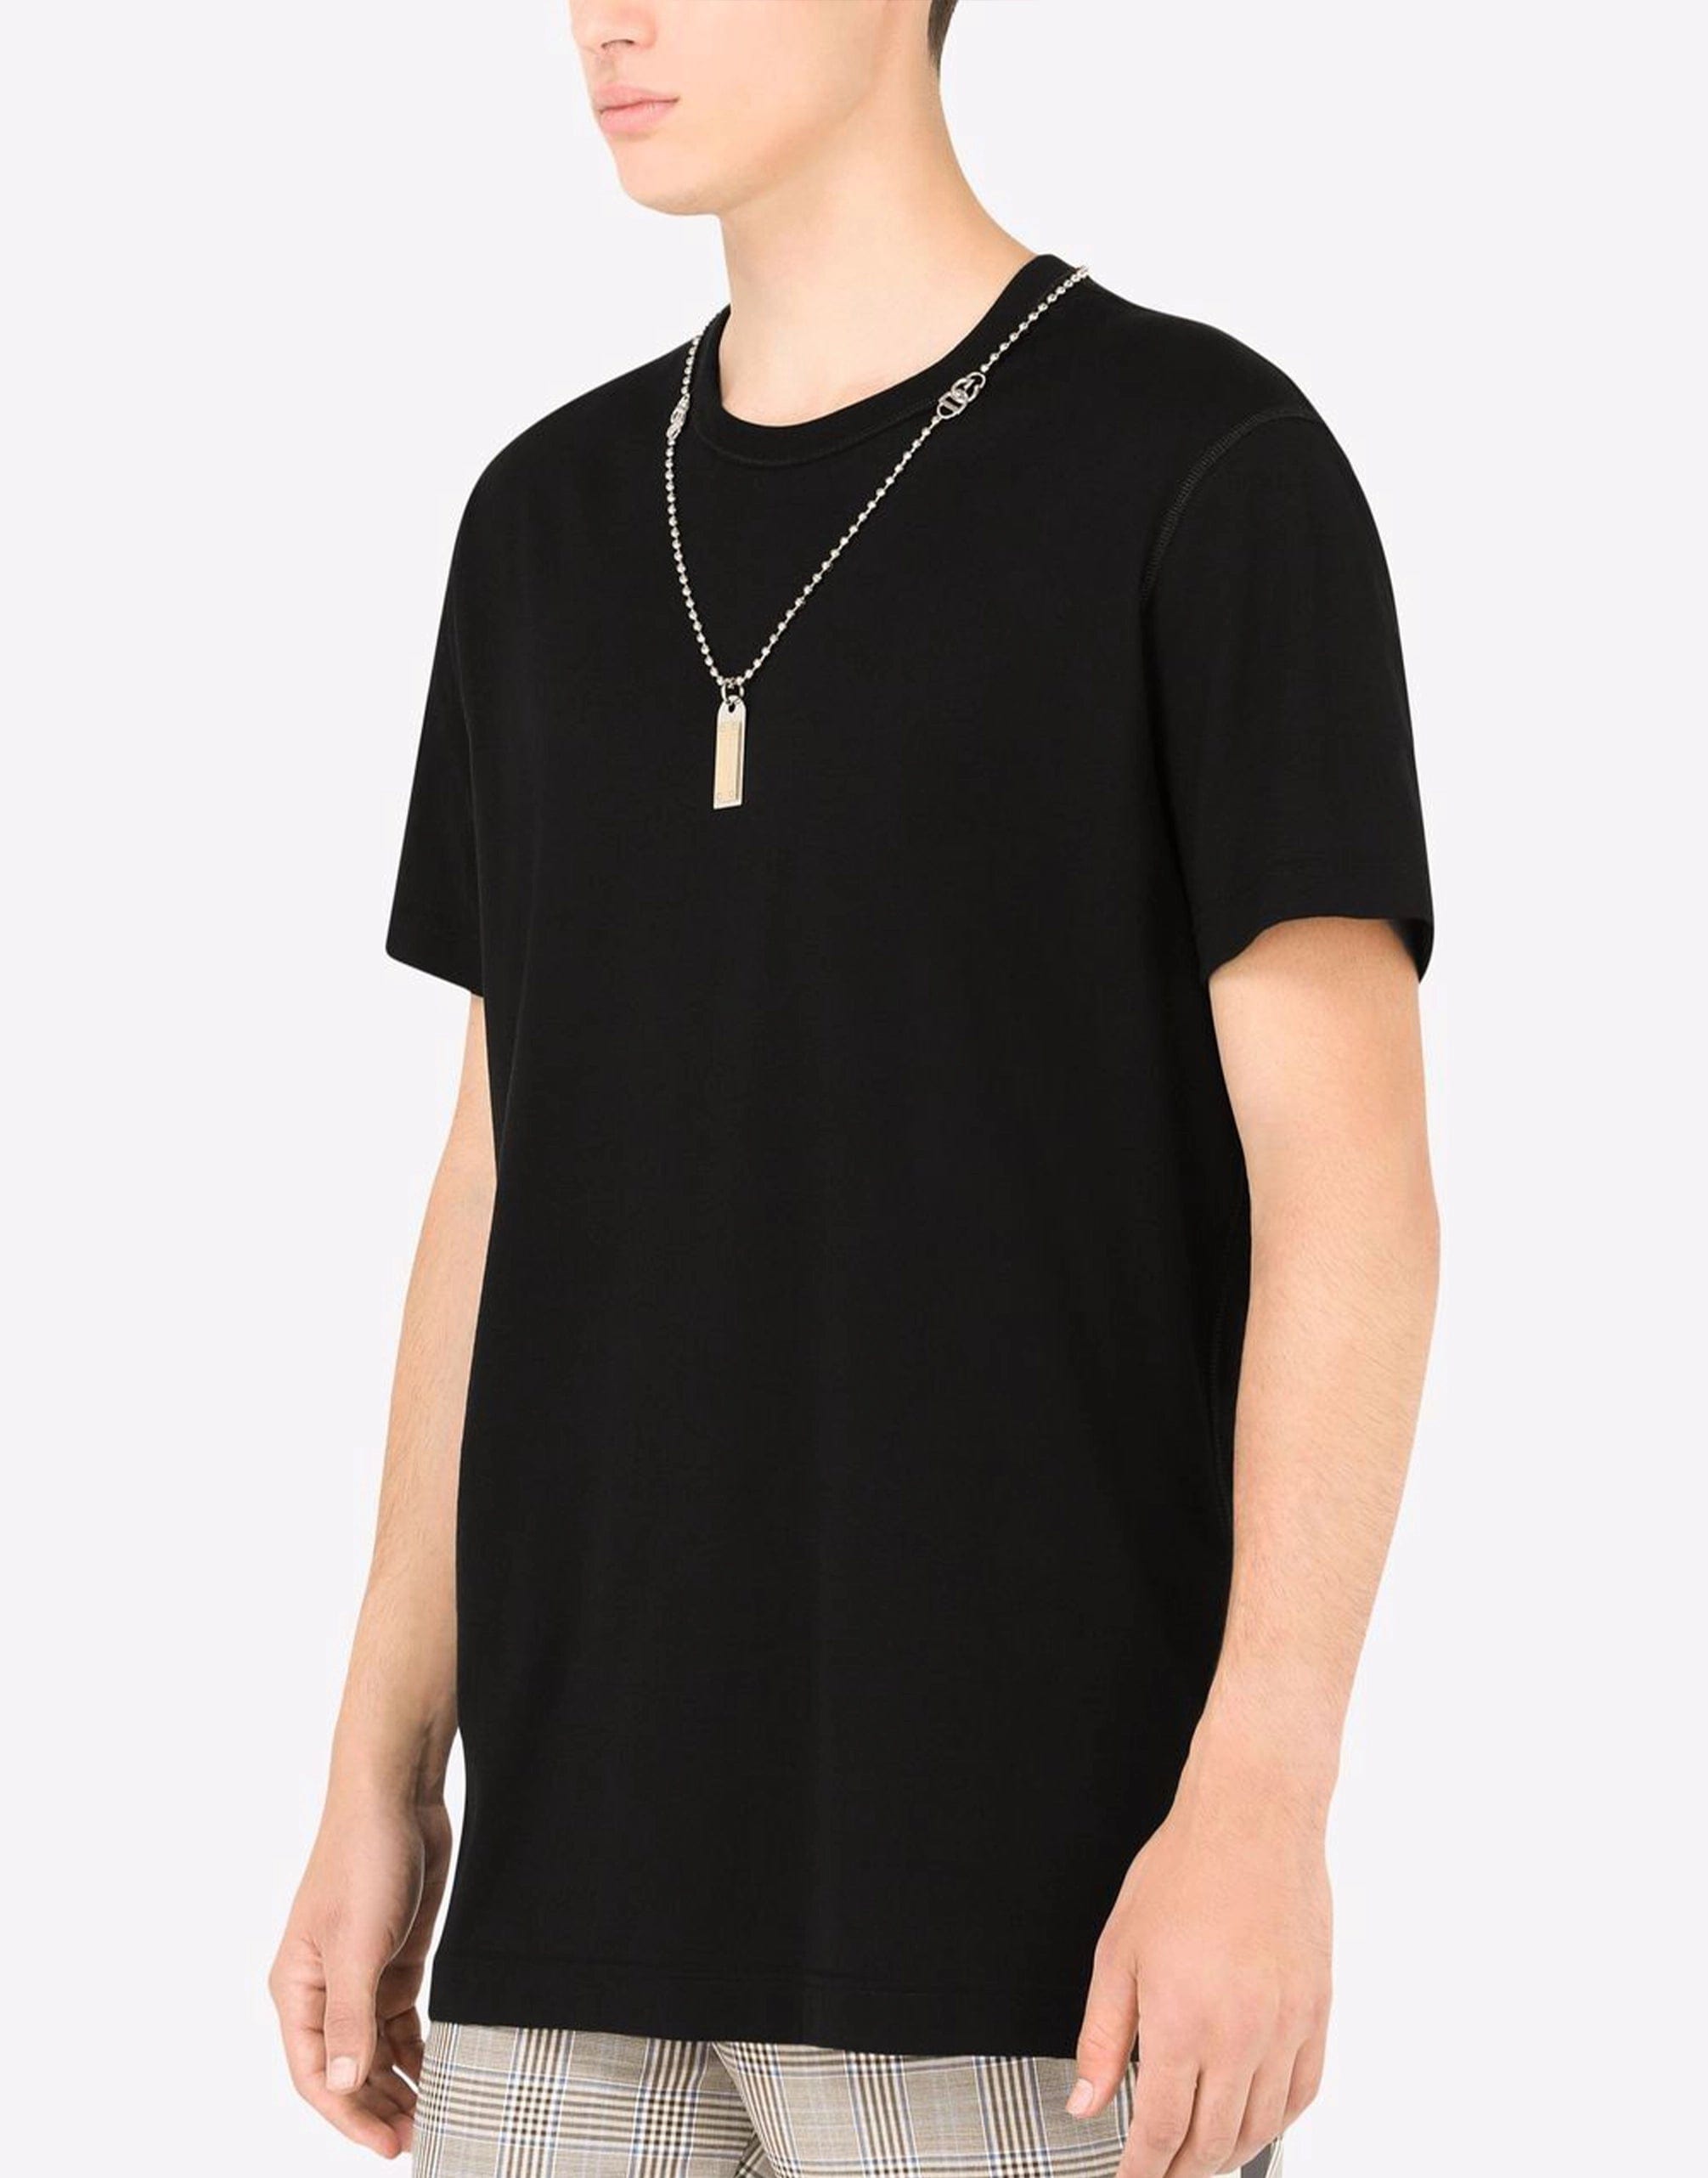 Baumwoll-T-Shirt mit Halskette